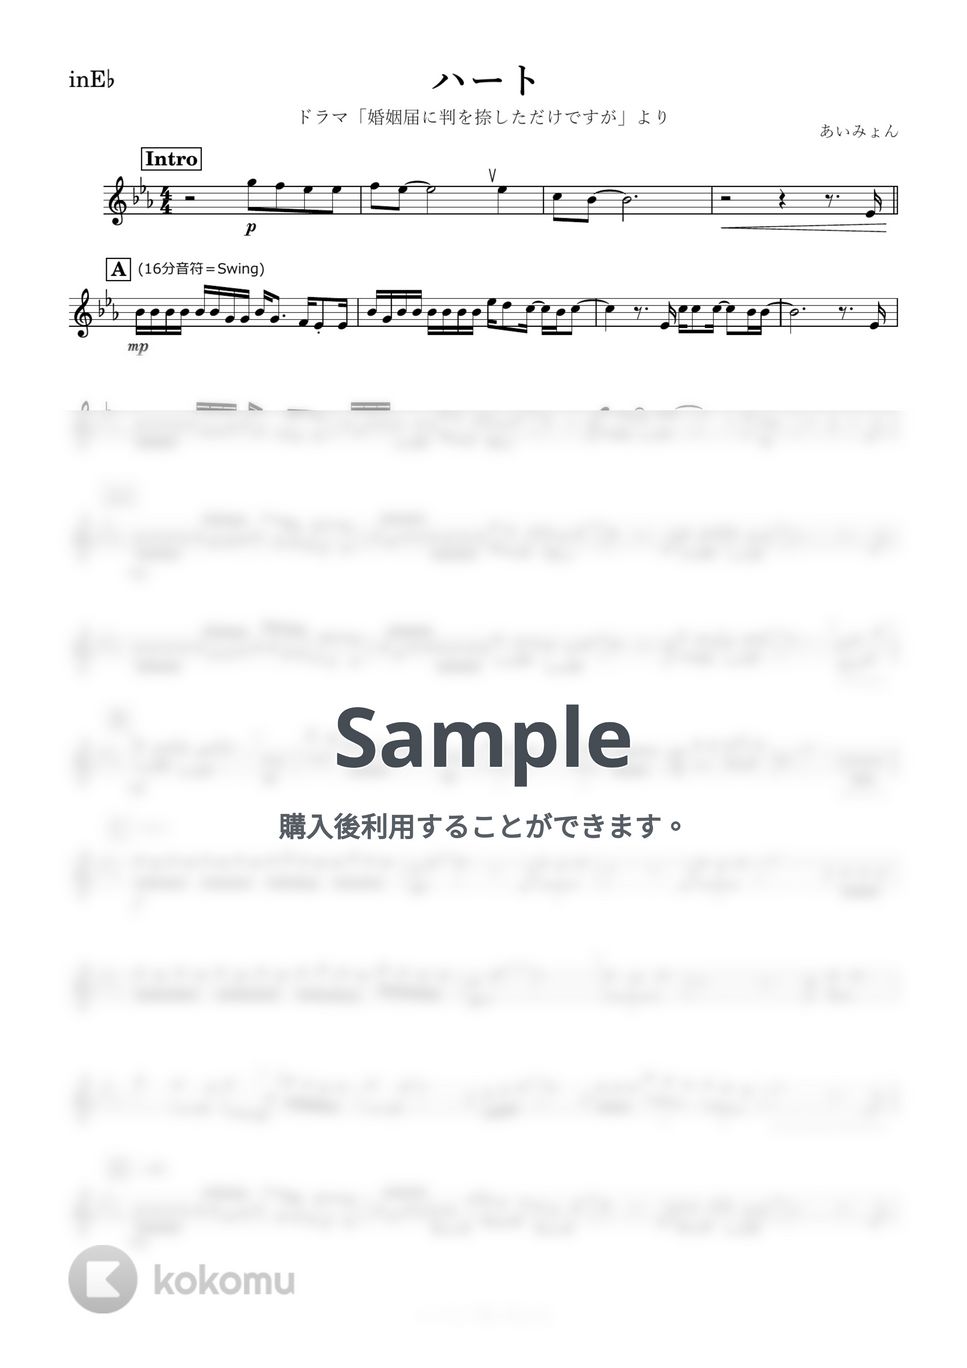 あいみょん - ハート (E♭) by kanamusic